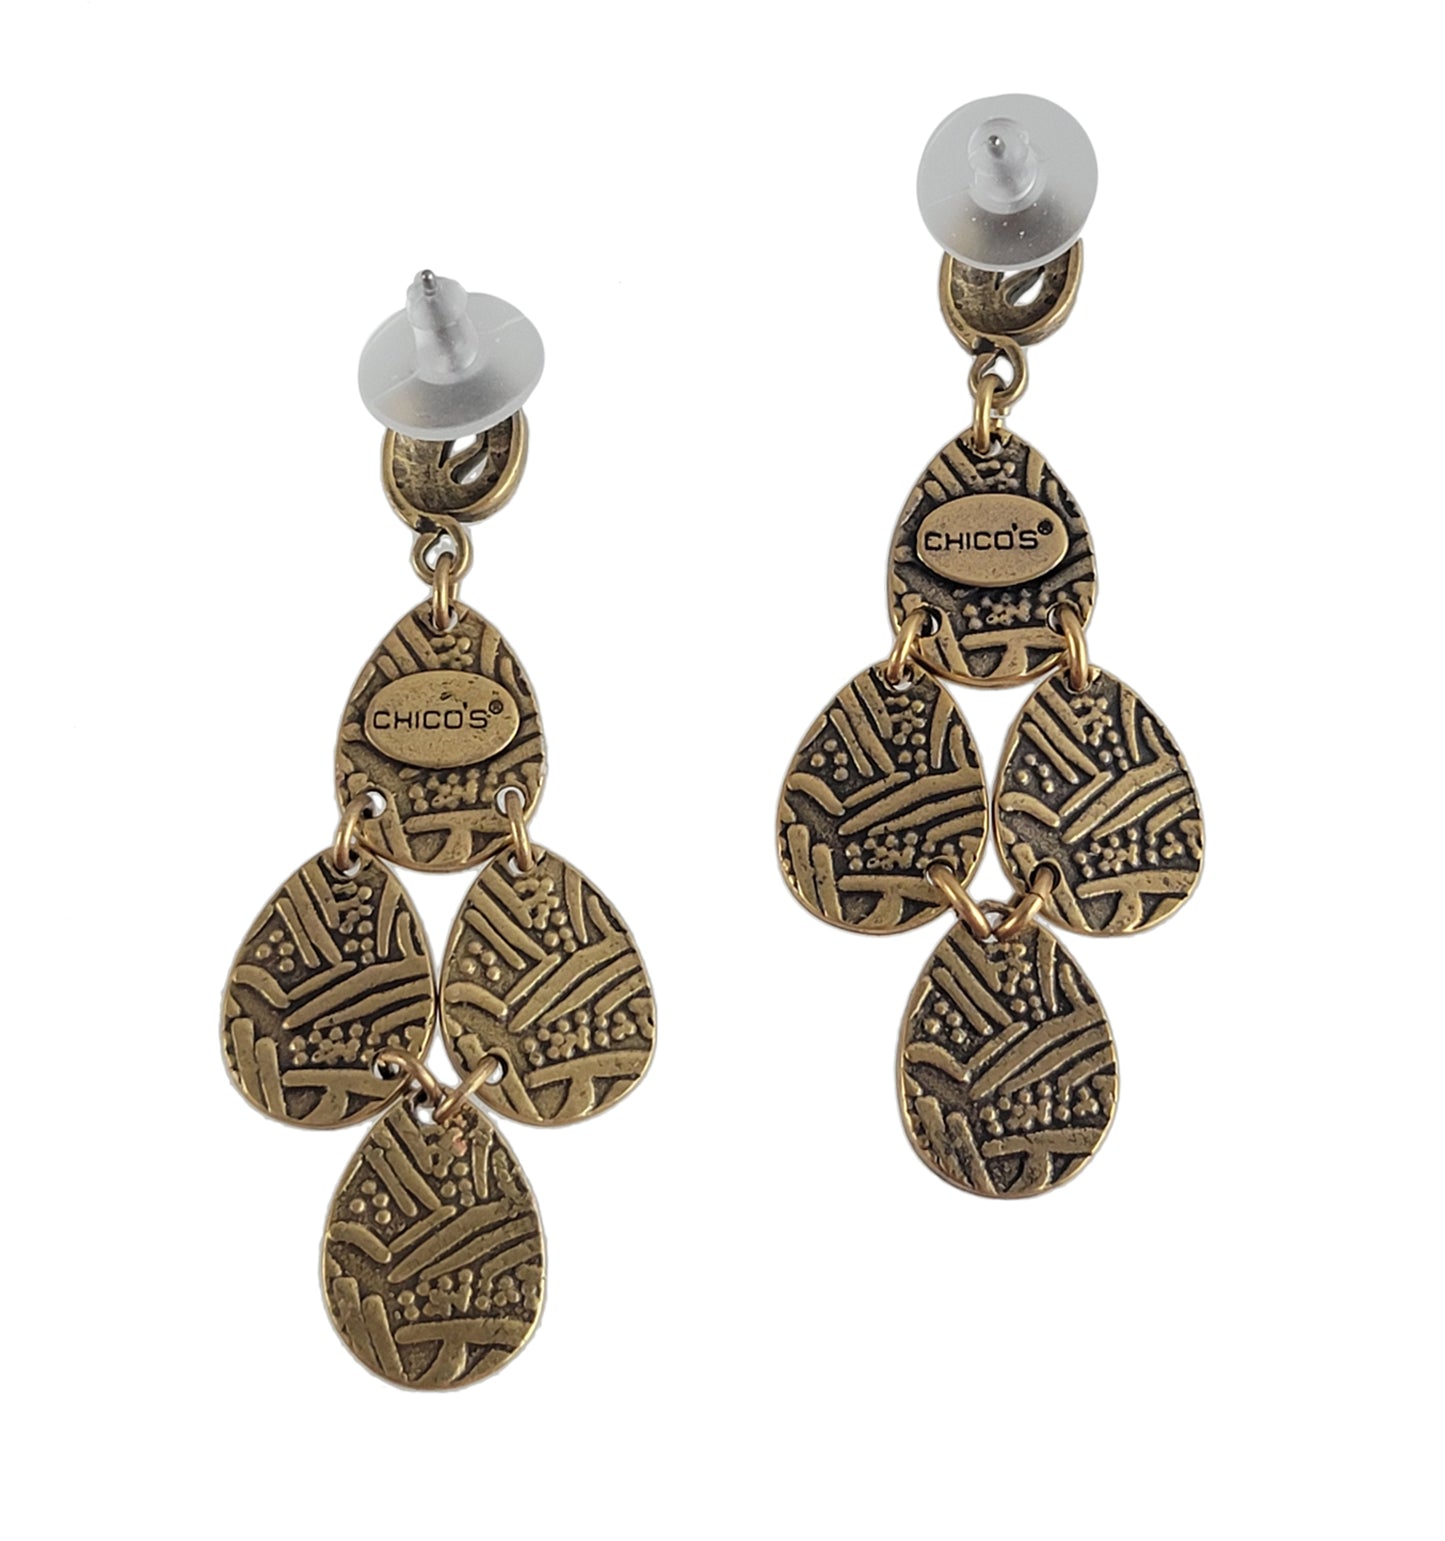 Chicos Tribal Design Teardop Chandelier Pierced Earrings 2 1/2" NWOT Gold Tone